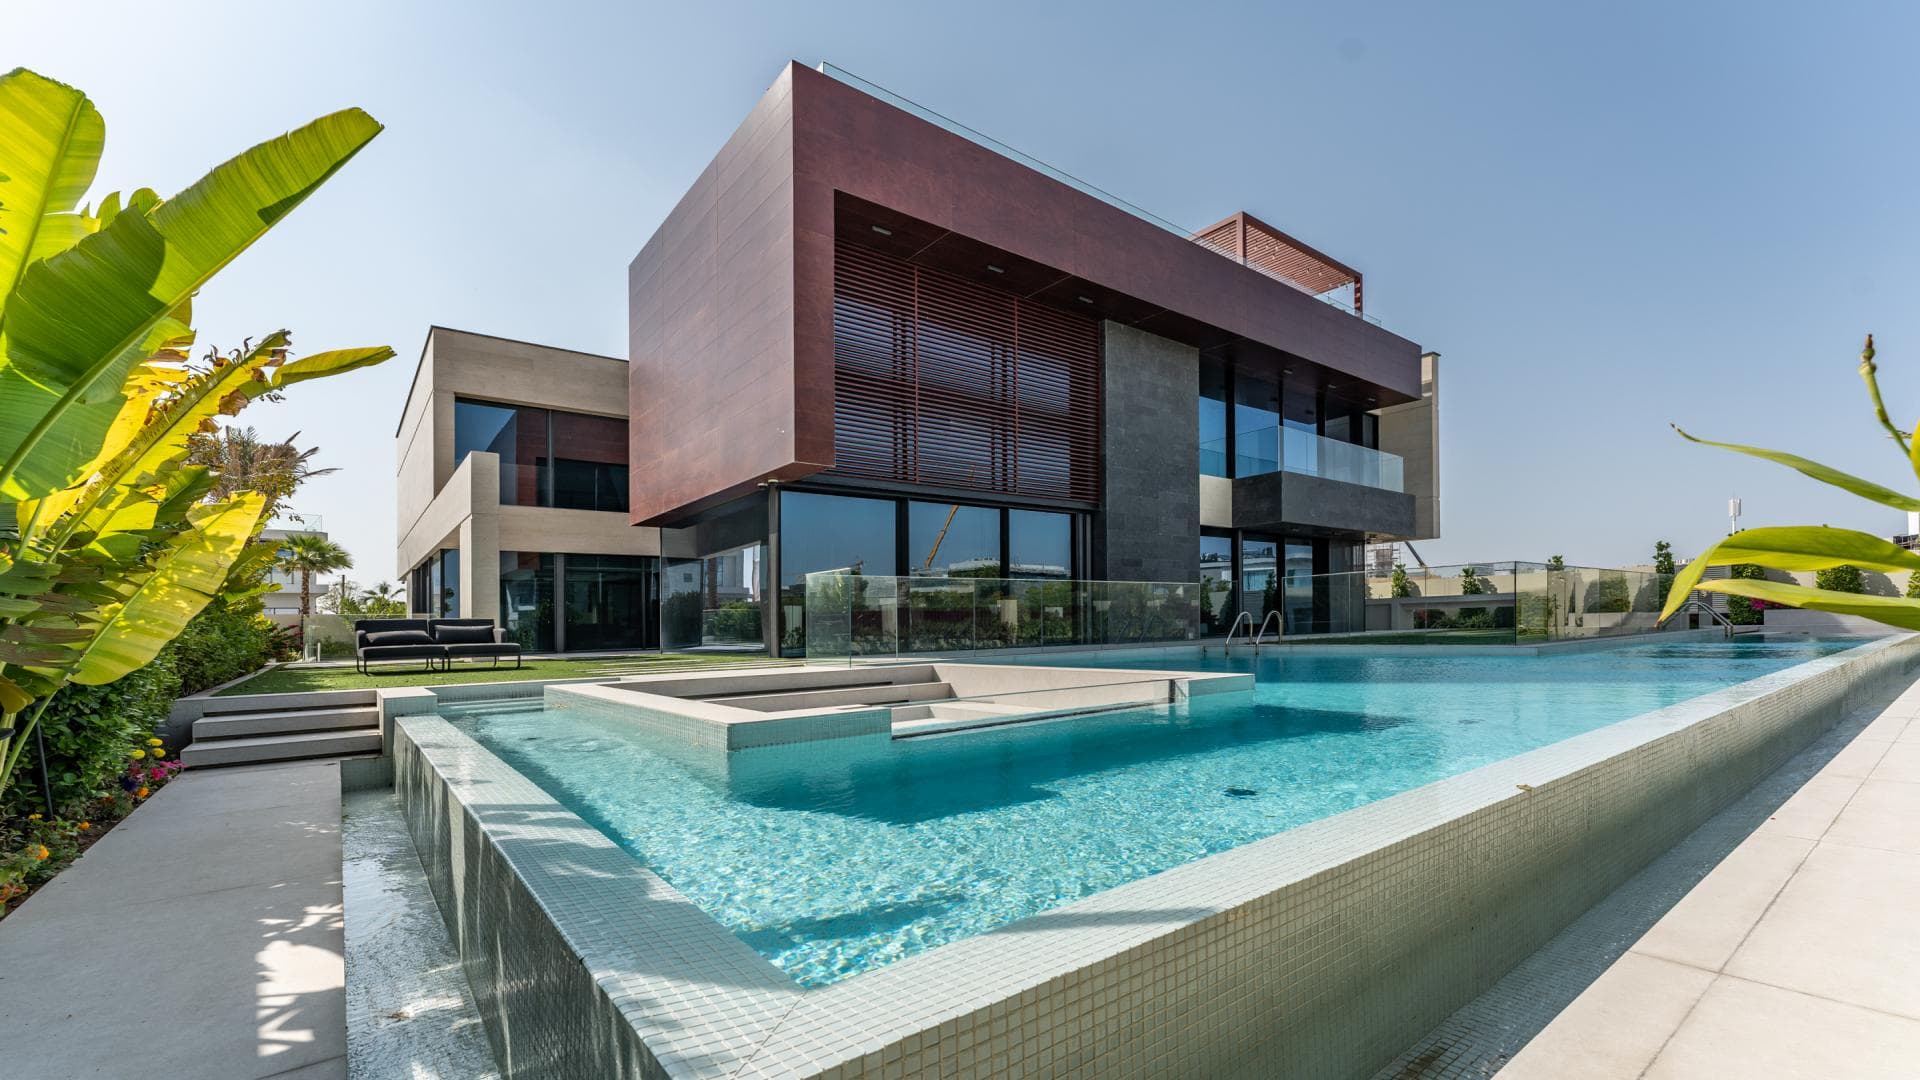 5 Bedroom Villa For Sale Dubai Hills Lp17449 3ec19169eb2d900.jpg